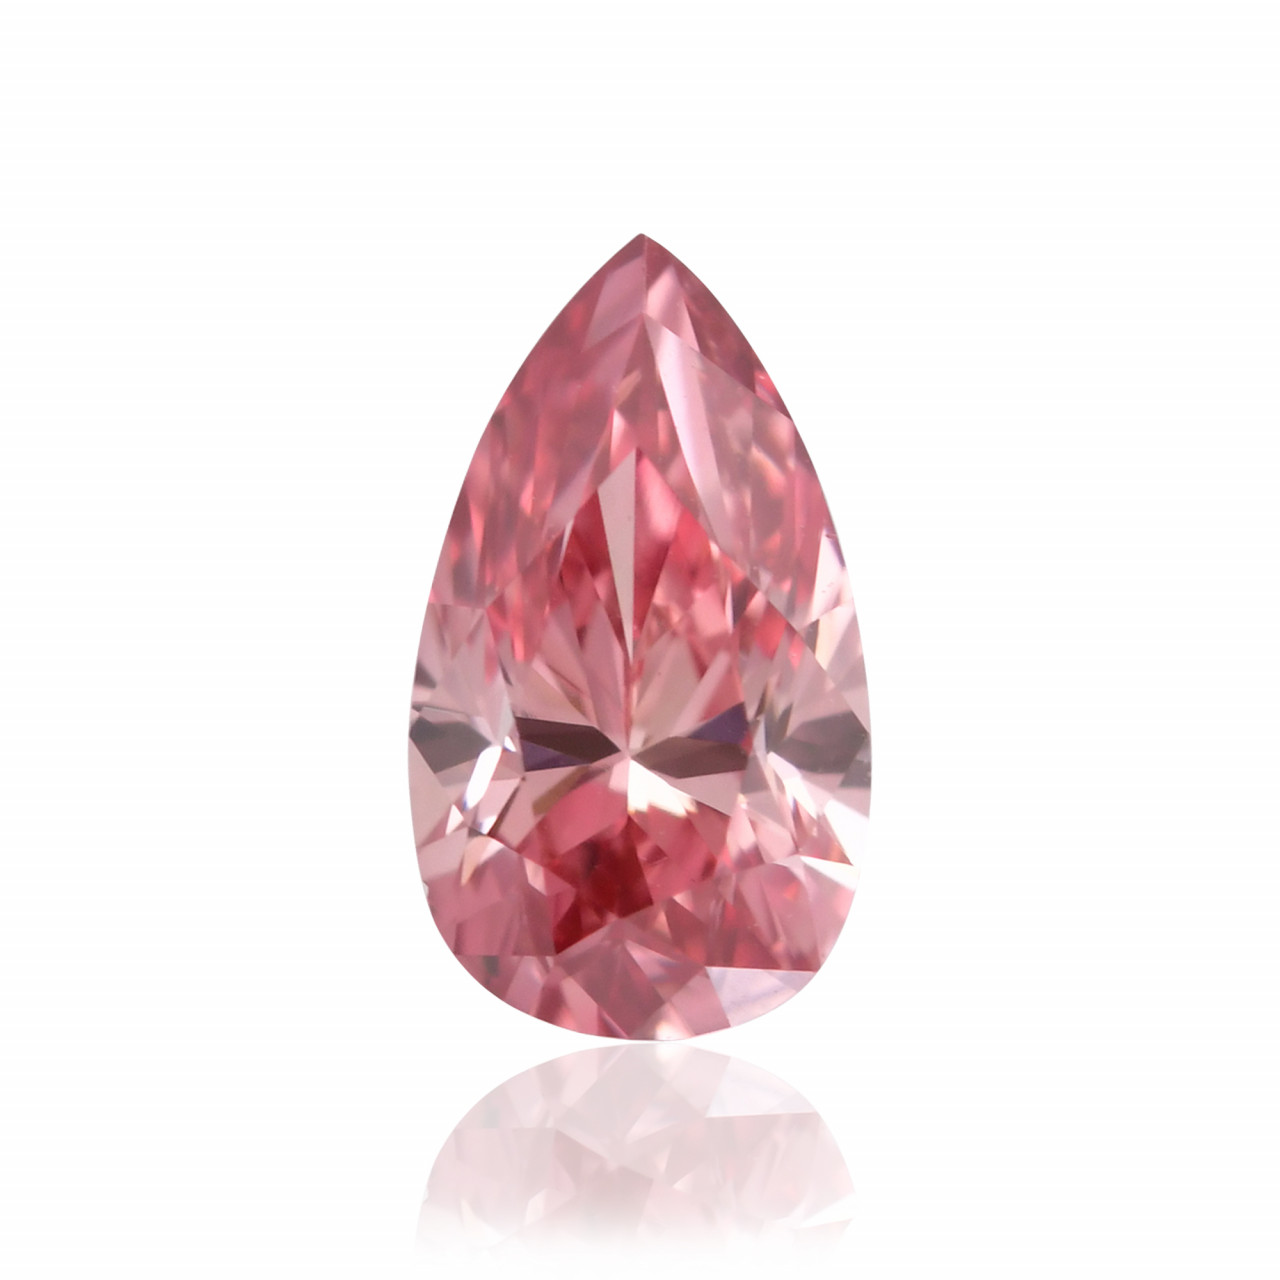 0.18 carat, Fancy Intense Pink Diamond, Pear Shape, VS2 Clarity 